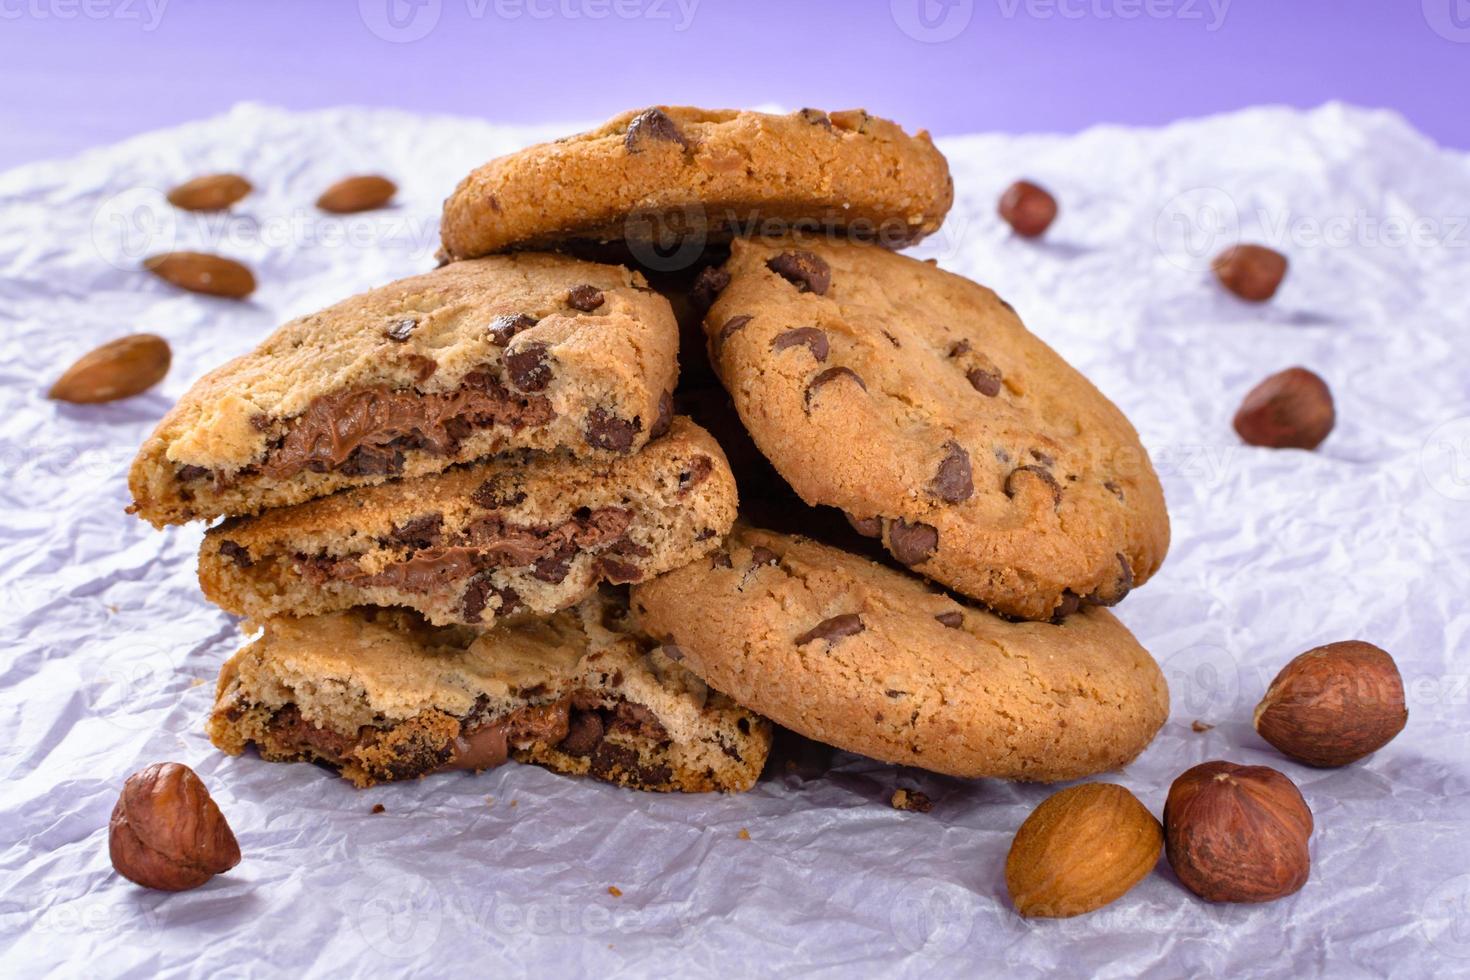 biscuits aux pépites de chocolat, biscuits aux amandes, aux noix, aux noisettes. photo